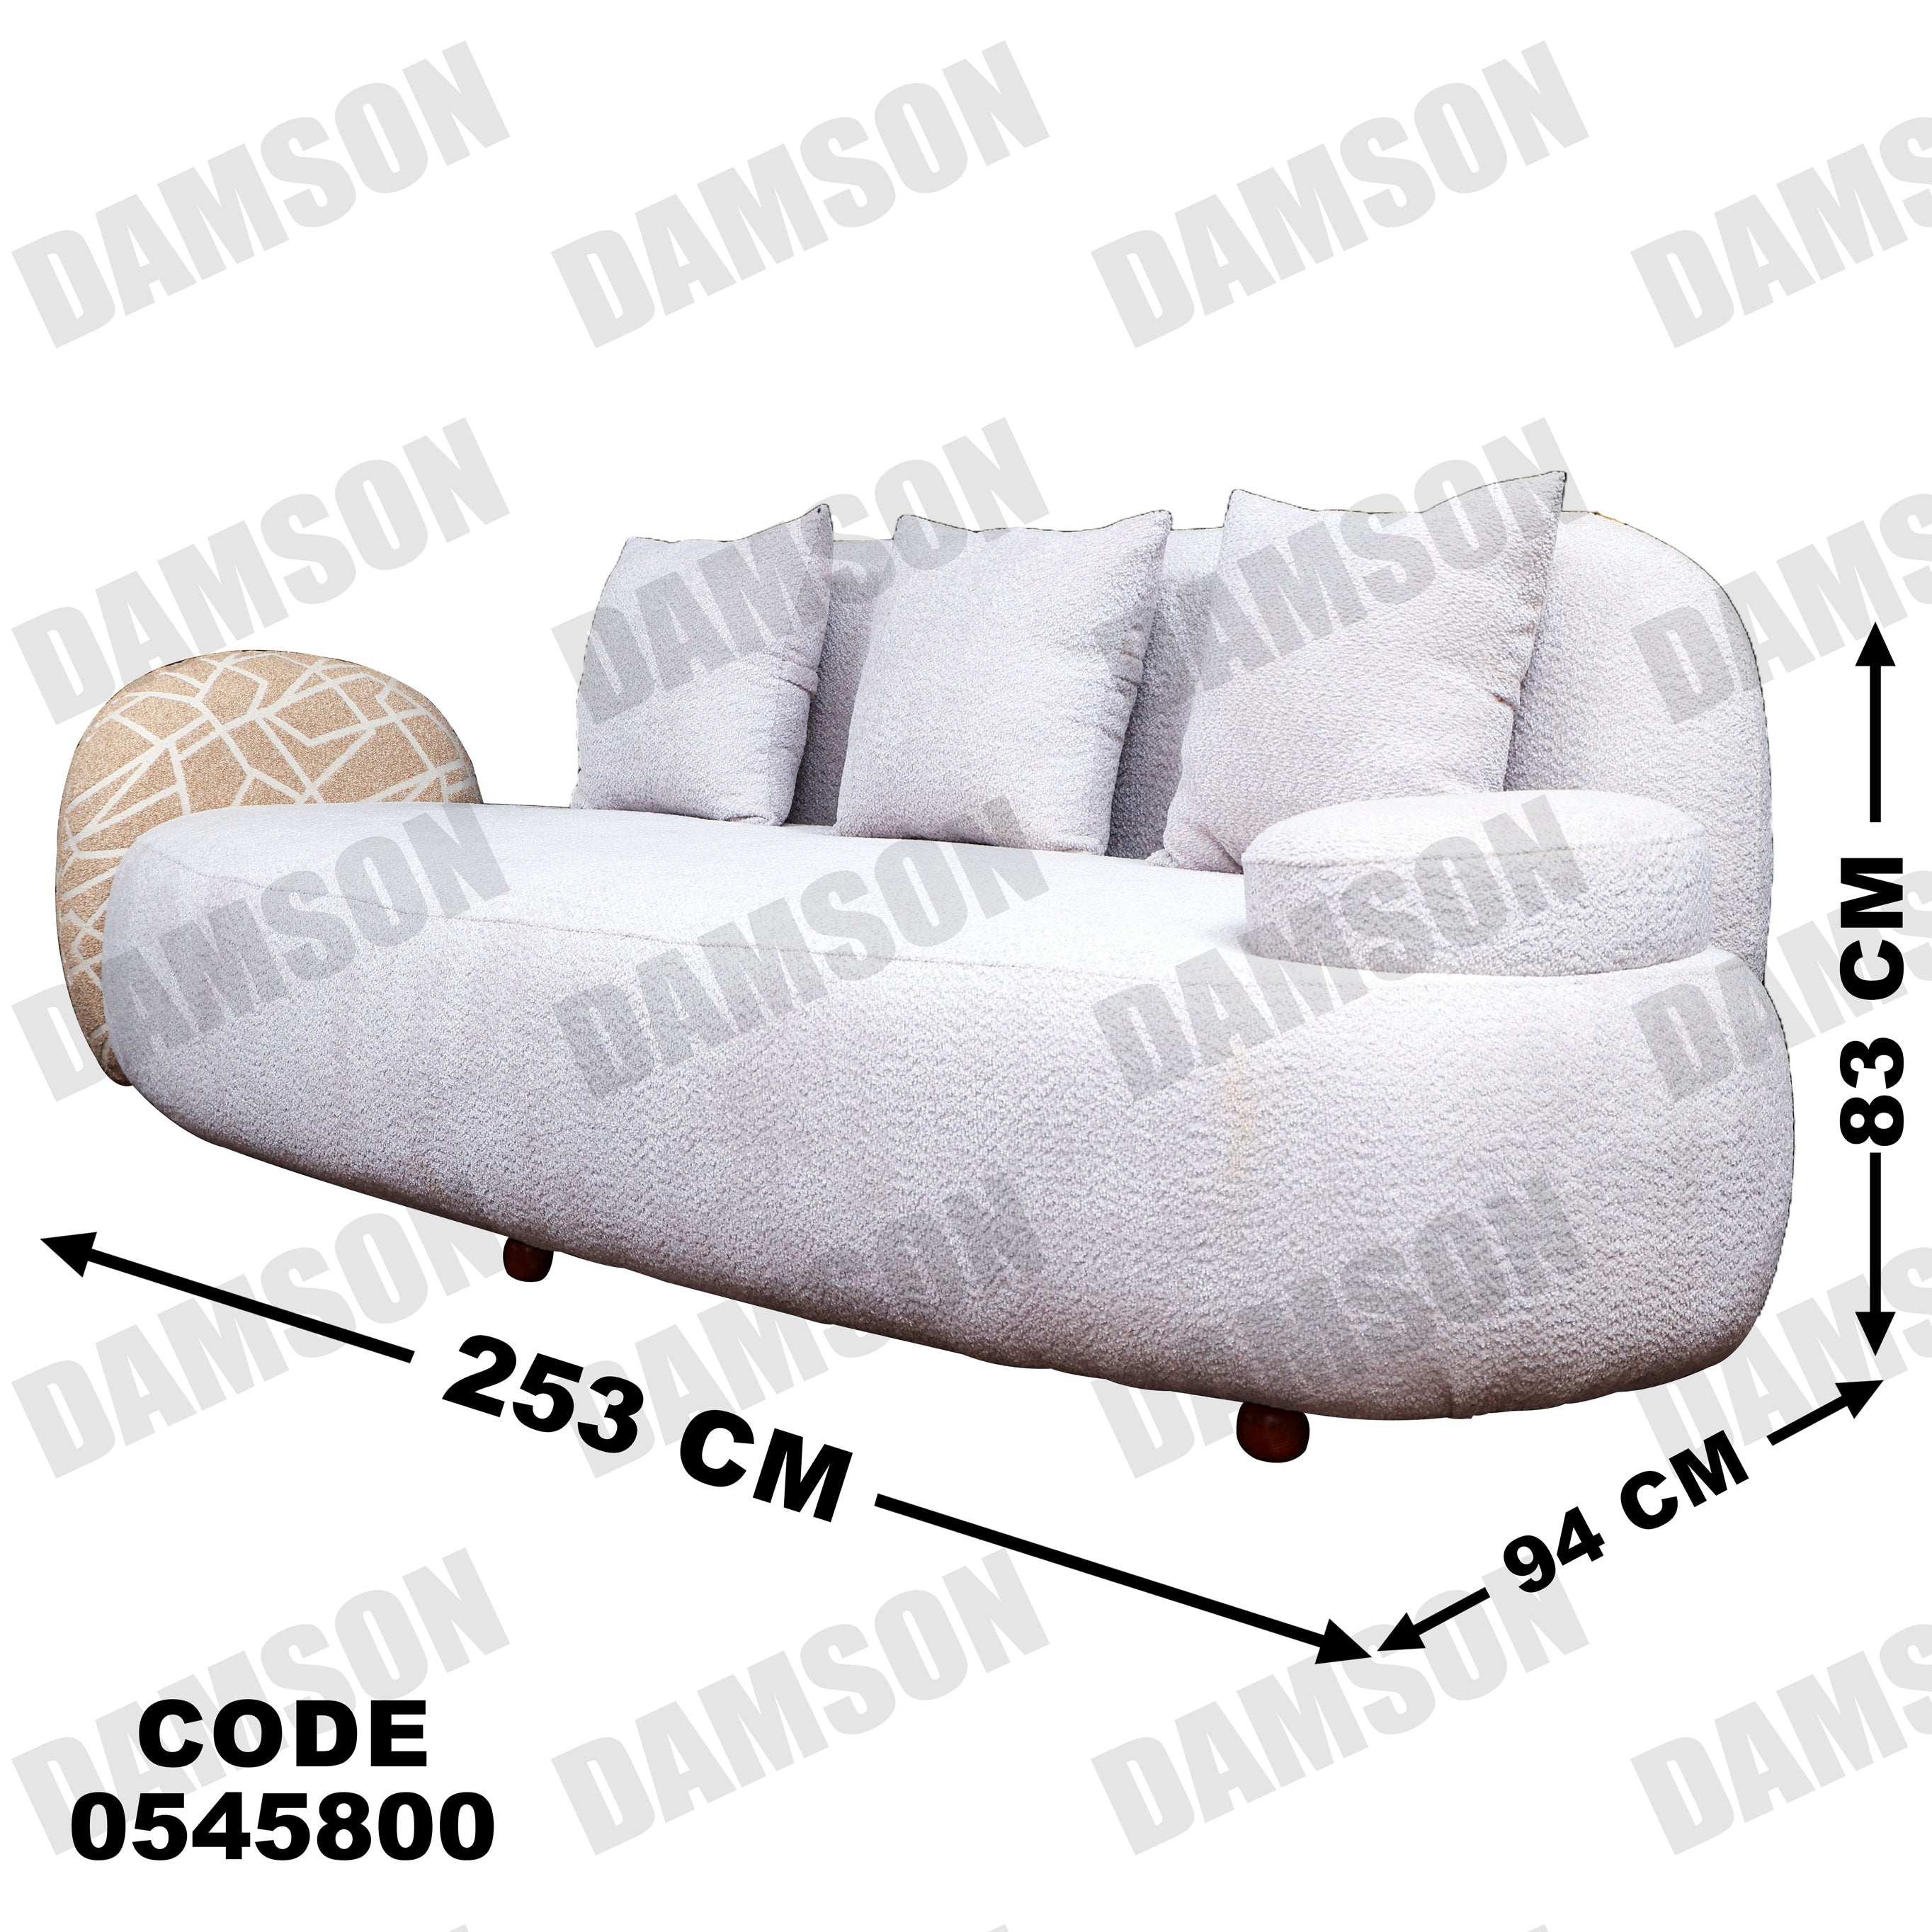 انترية 458 - Damson Furnitureانترية 458